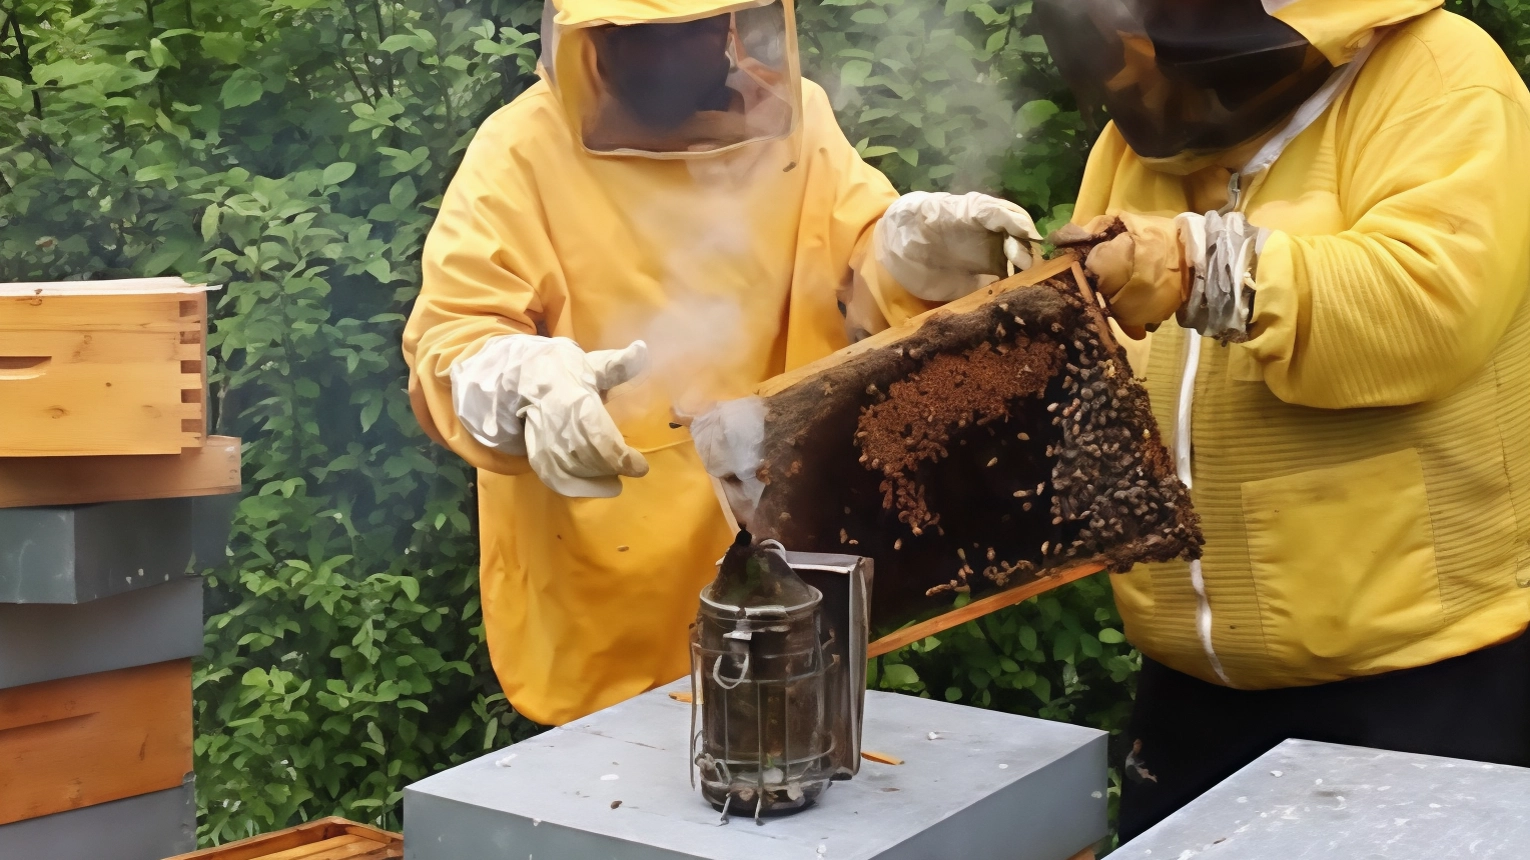 Salviamo le api, successo per il video del biologo Felici